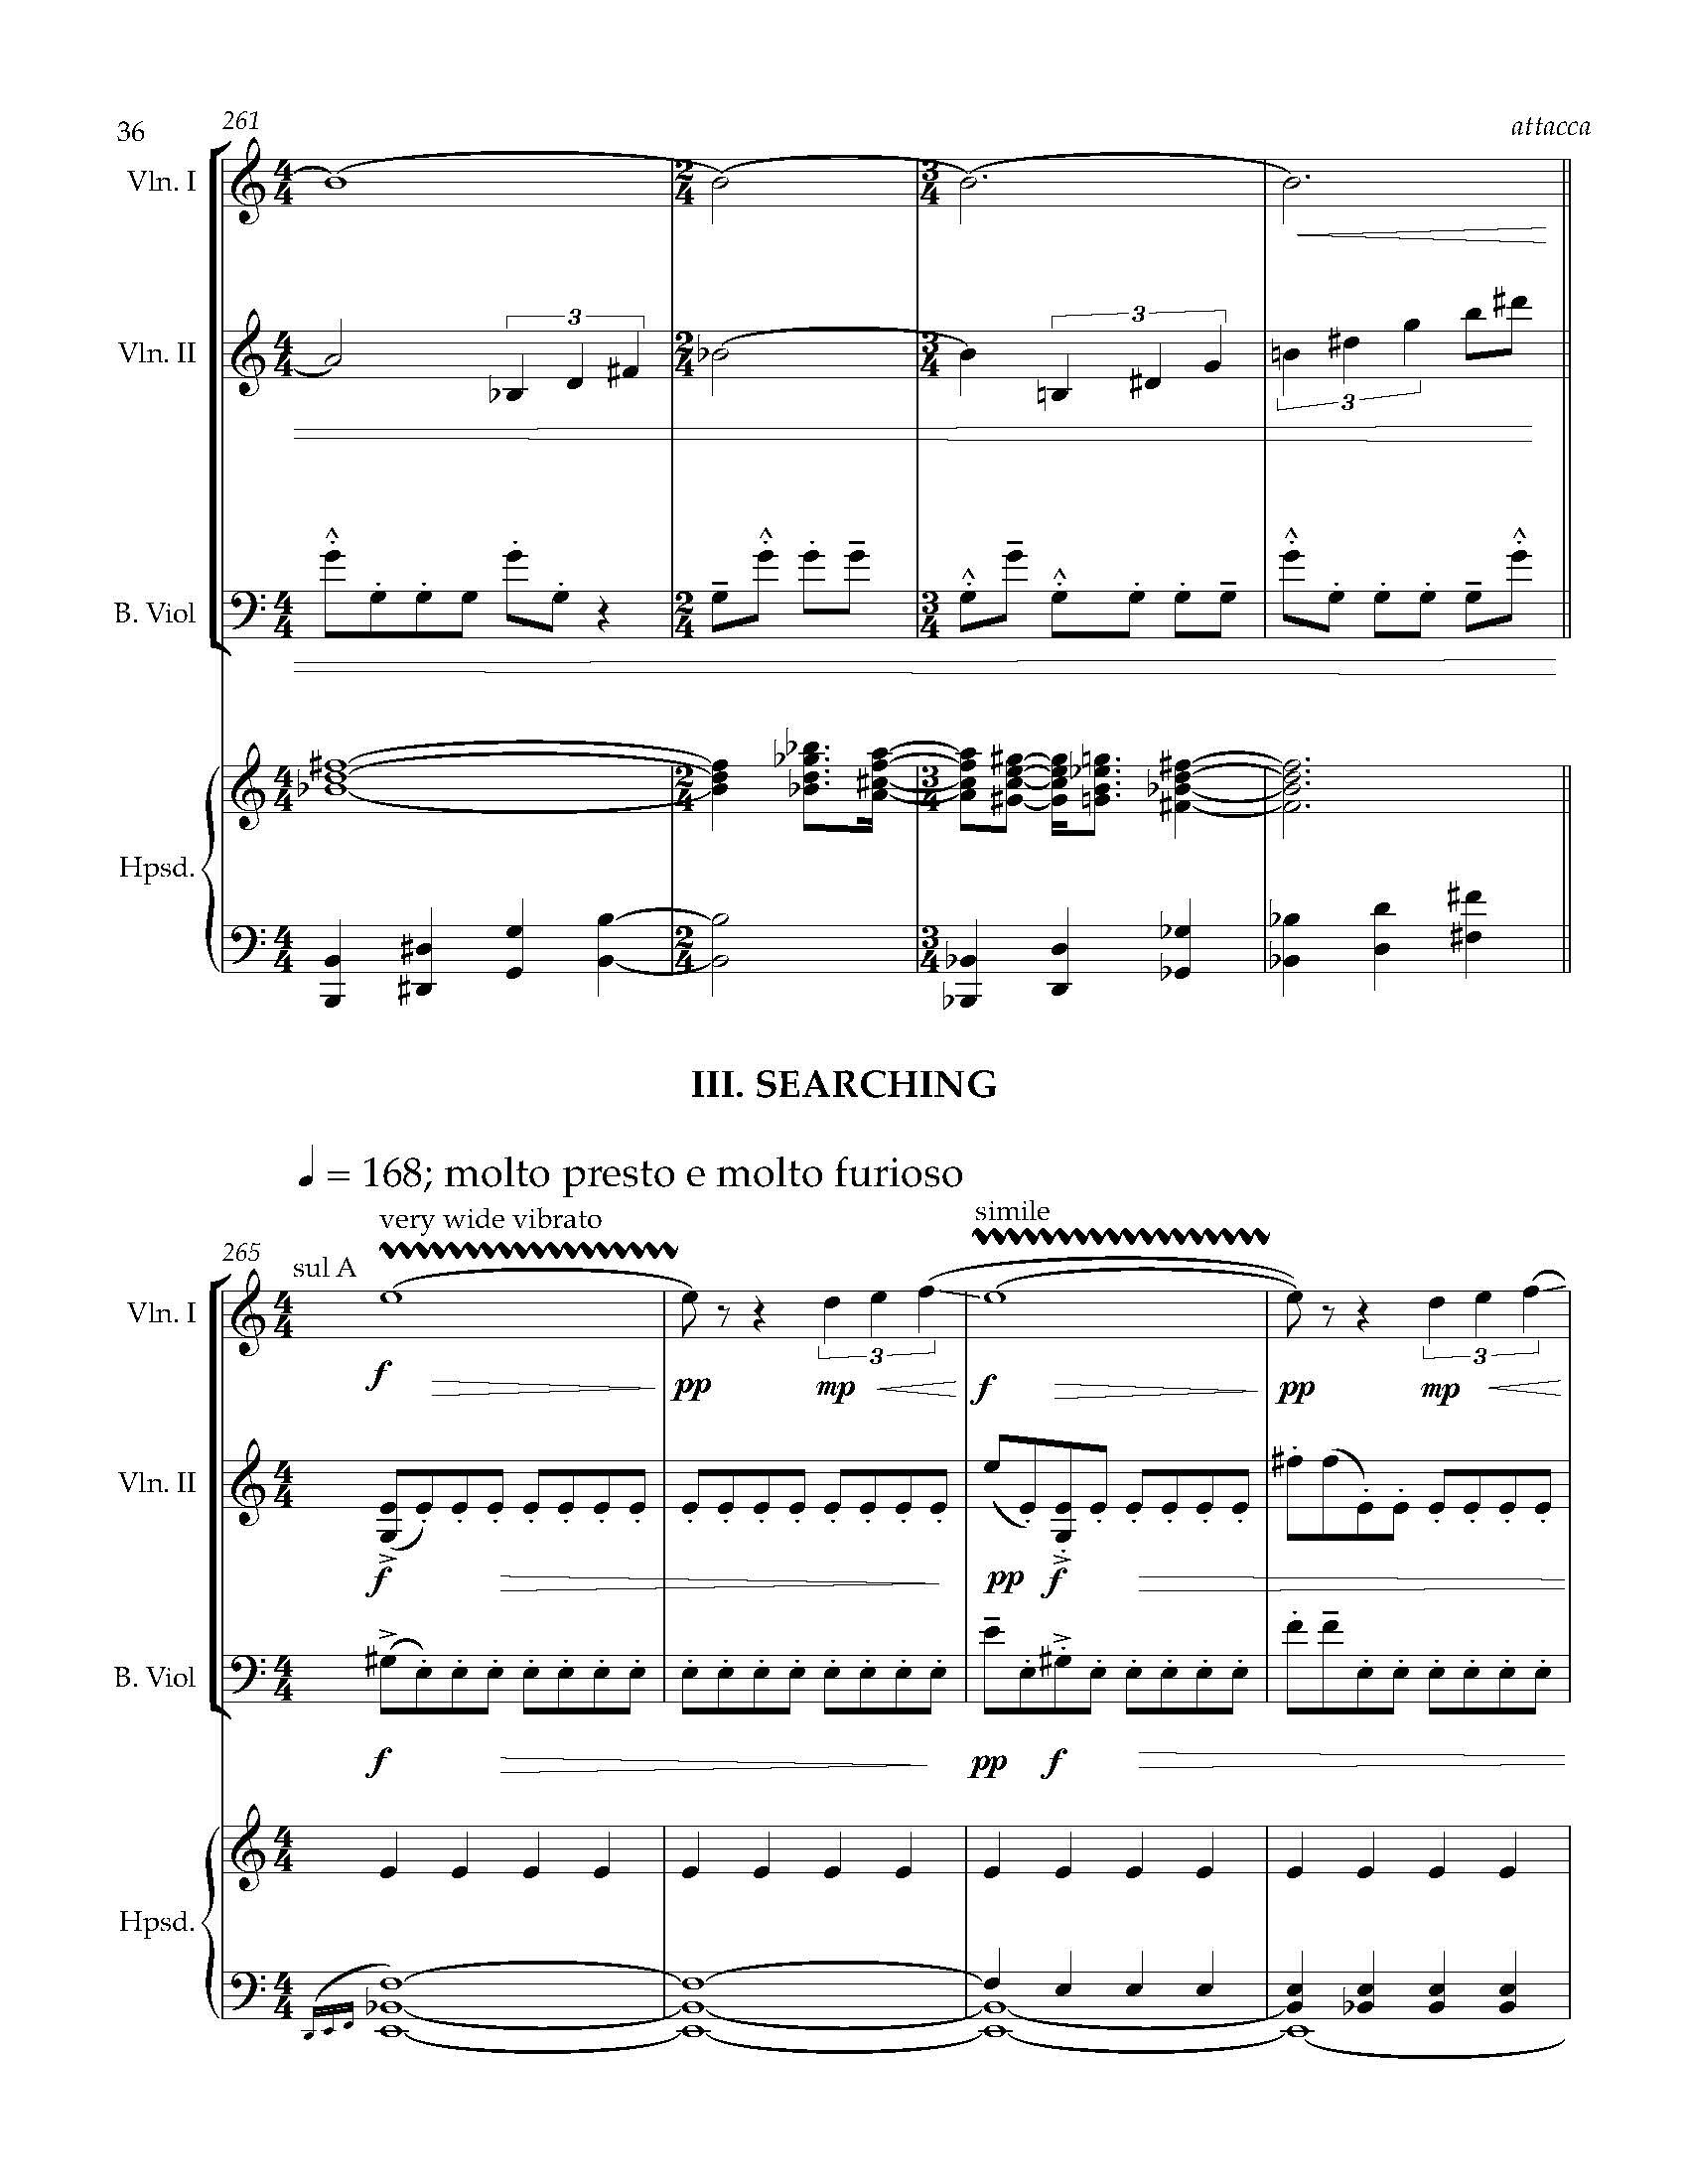 Sonata Sonare - Complete Score_Page_42.jpg